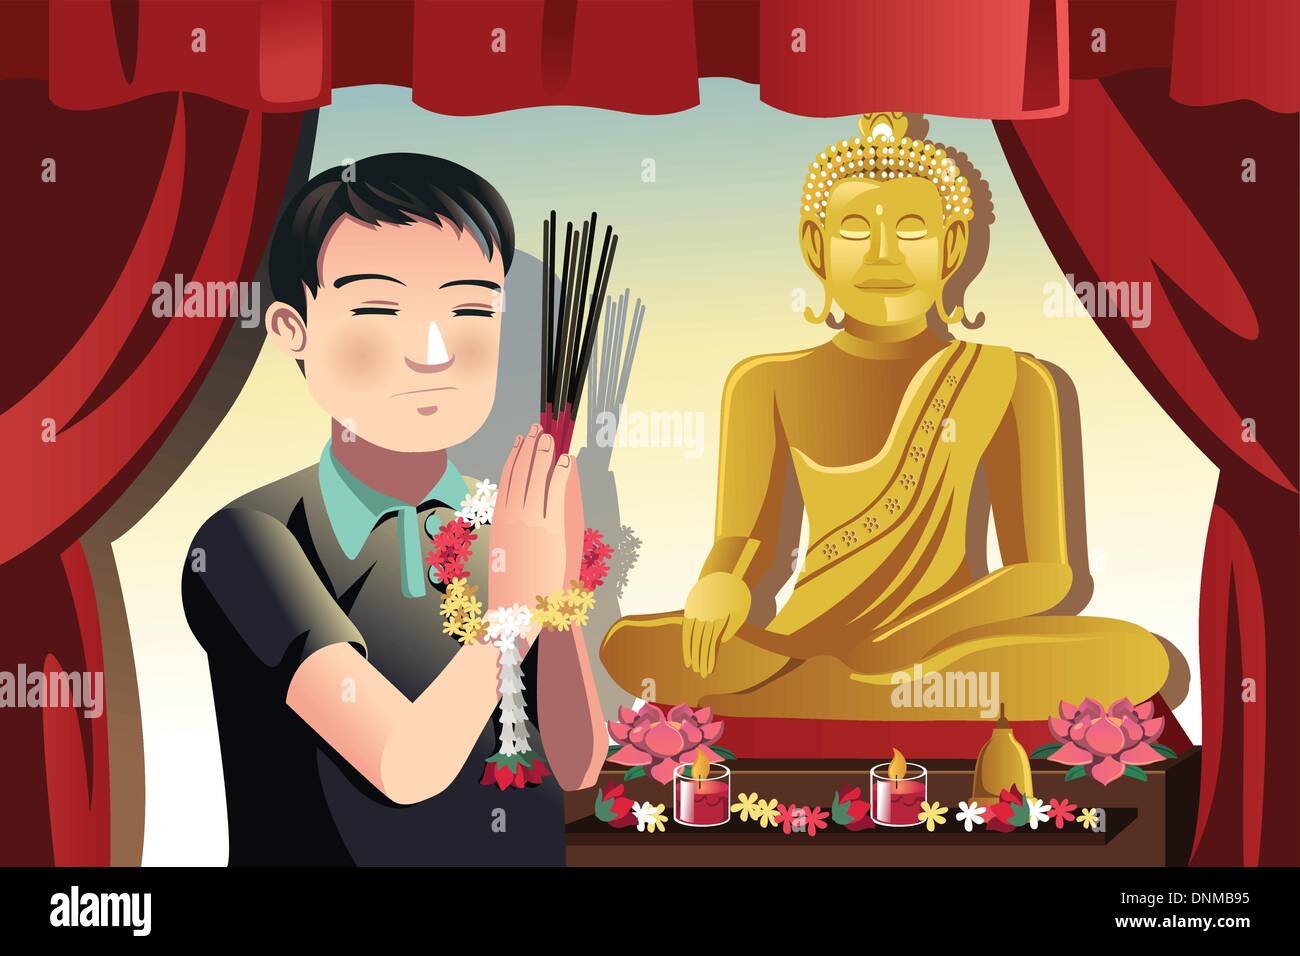 Un vecteur illustration d'un homme qui prie bouddhiste dans un temple Illustration de Vecteur